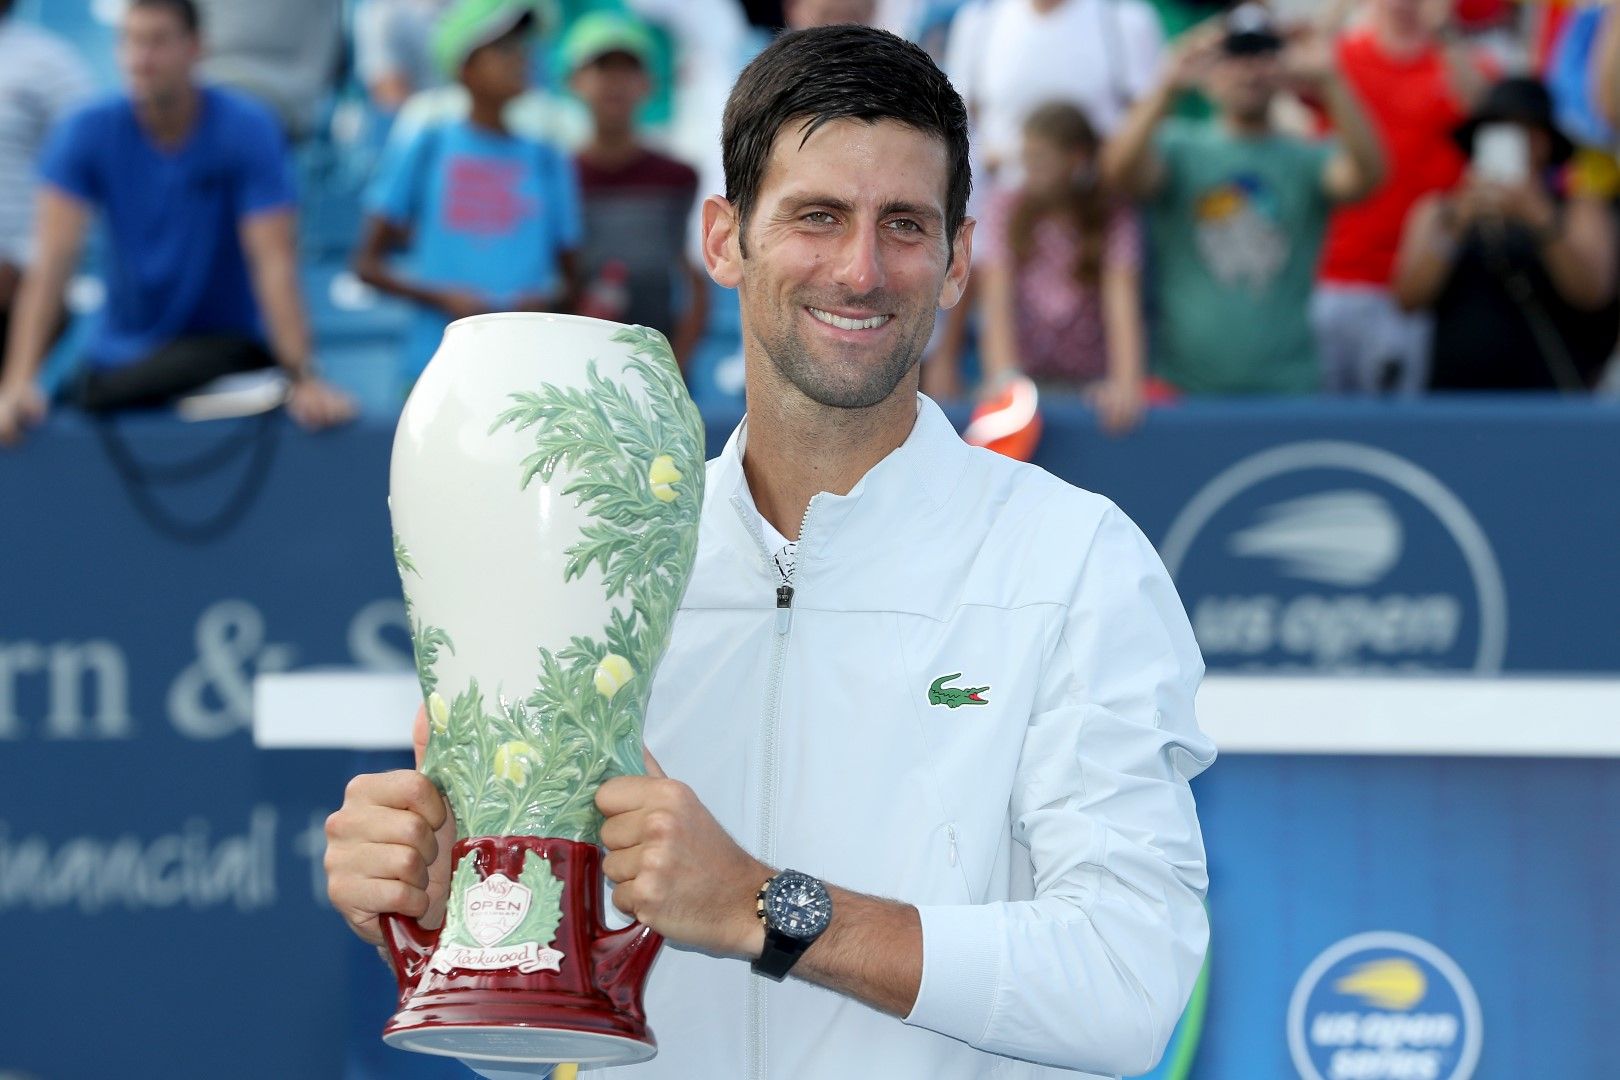 Пъзелът бе завършен снощи на турнира в Синсинати след нова голяма победа над Роджър Федерер.